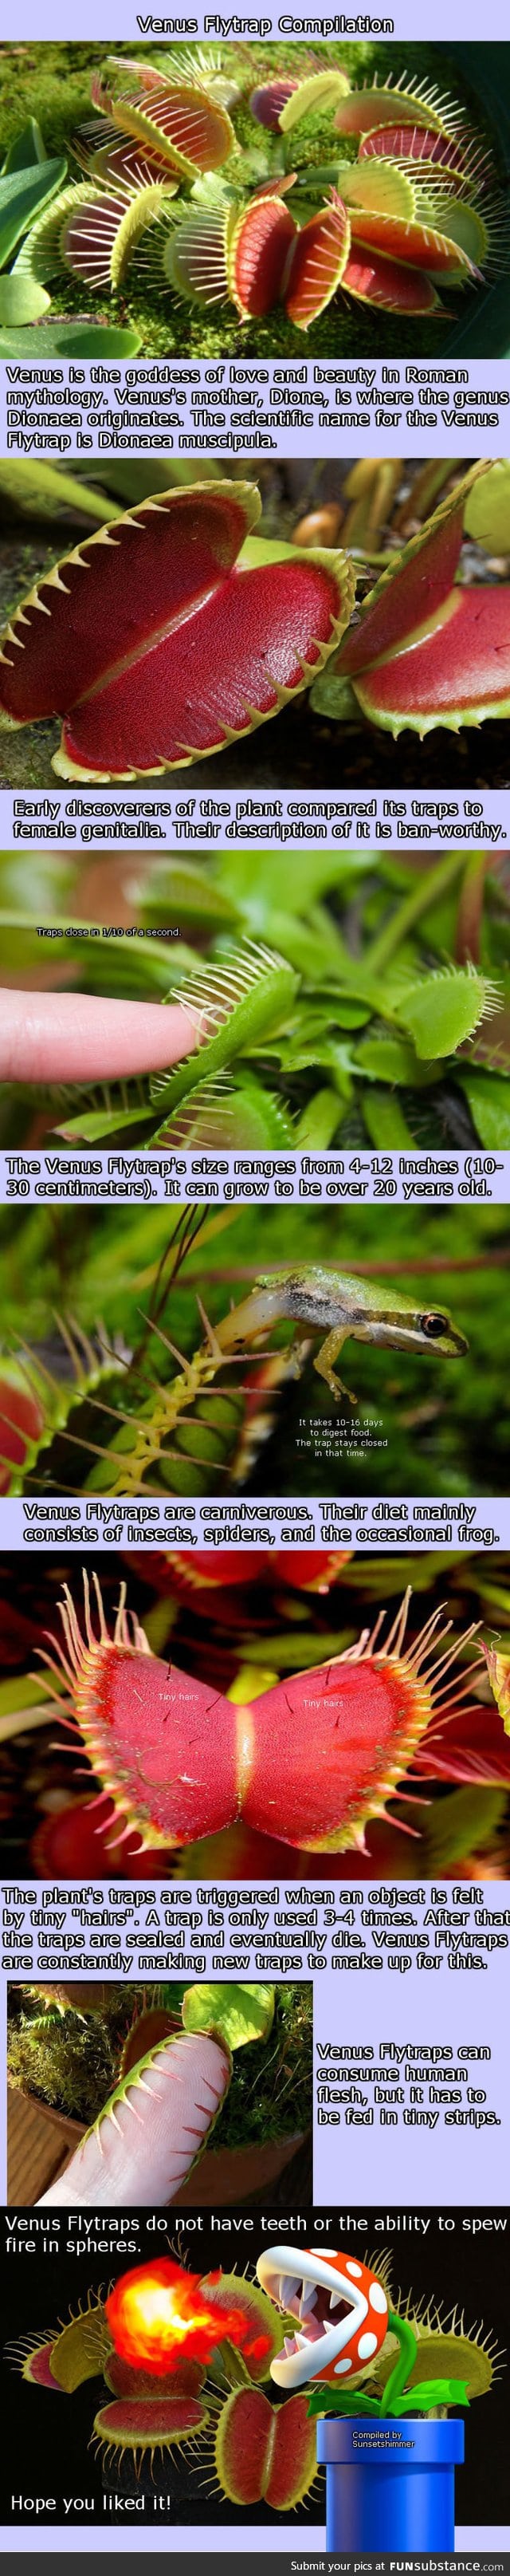 Venus flytrap compilation